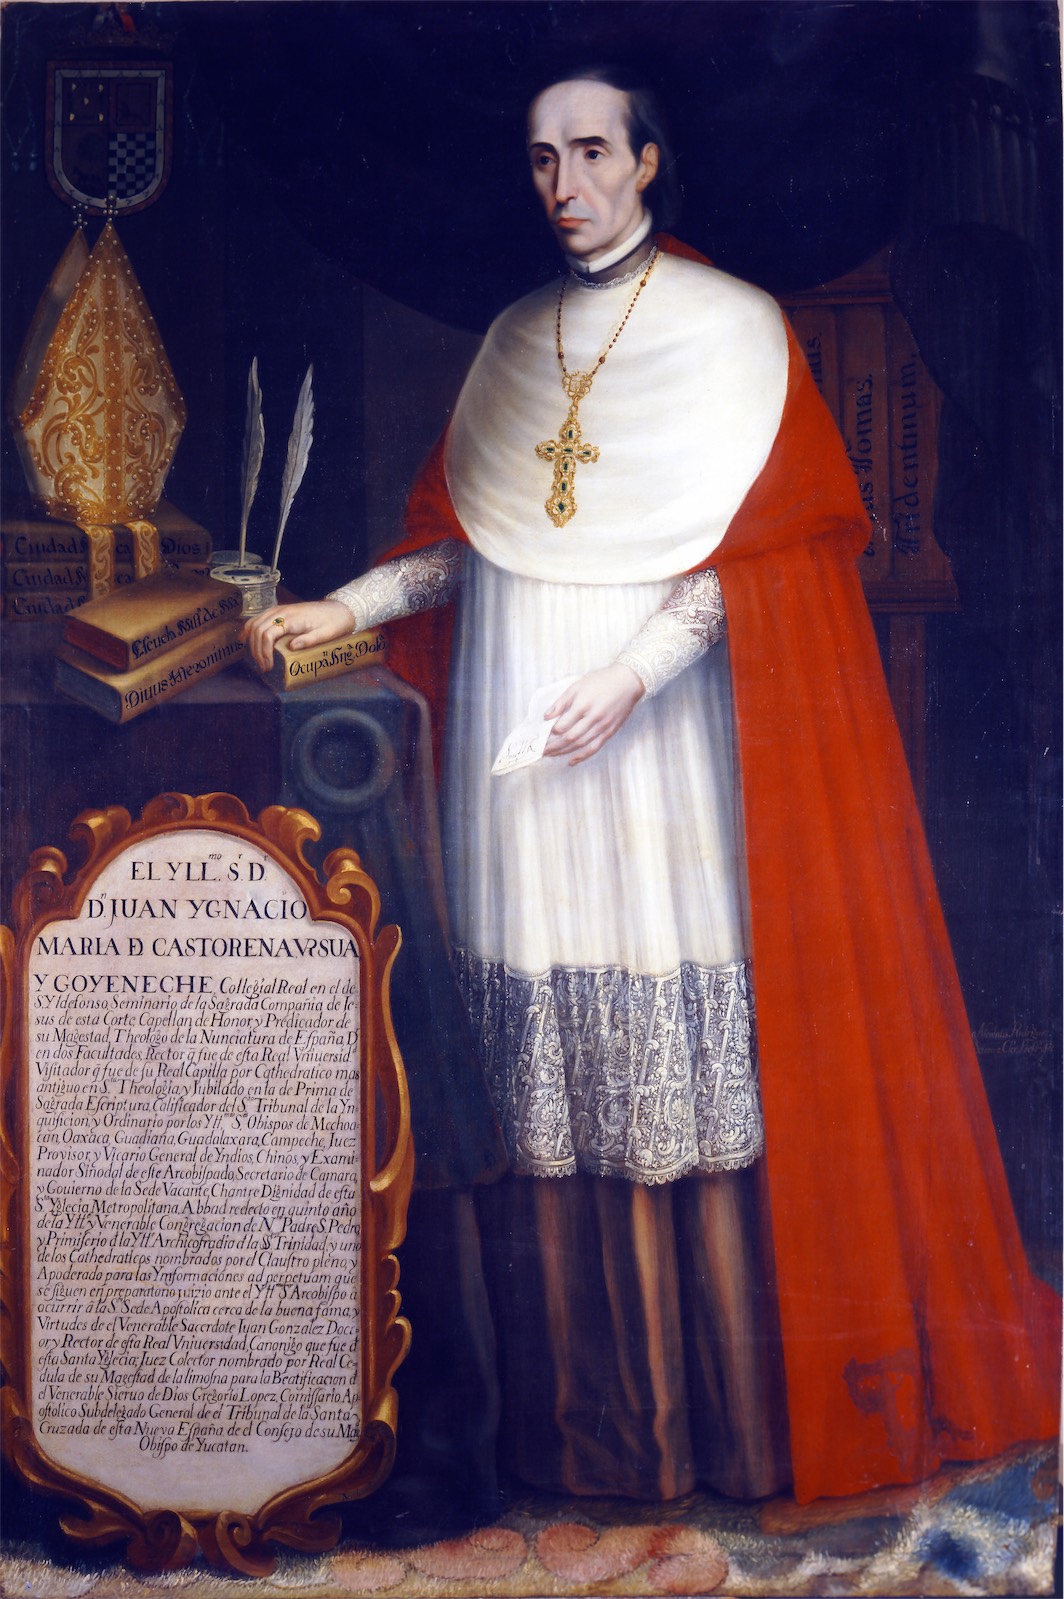 Juan Ignacio María de Castorena y Ursúa